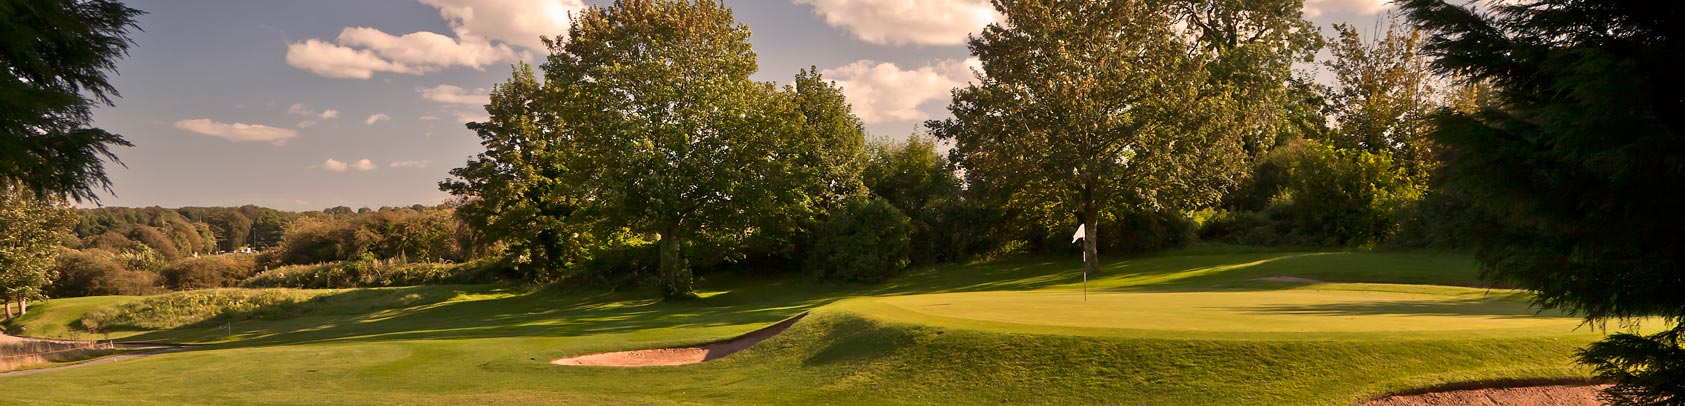 Golf Club Cardiff, Golf Wales